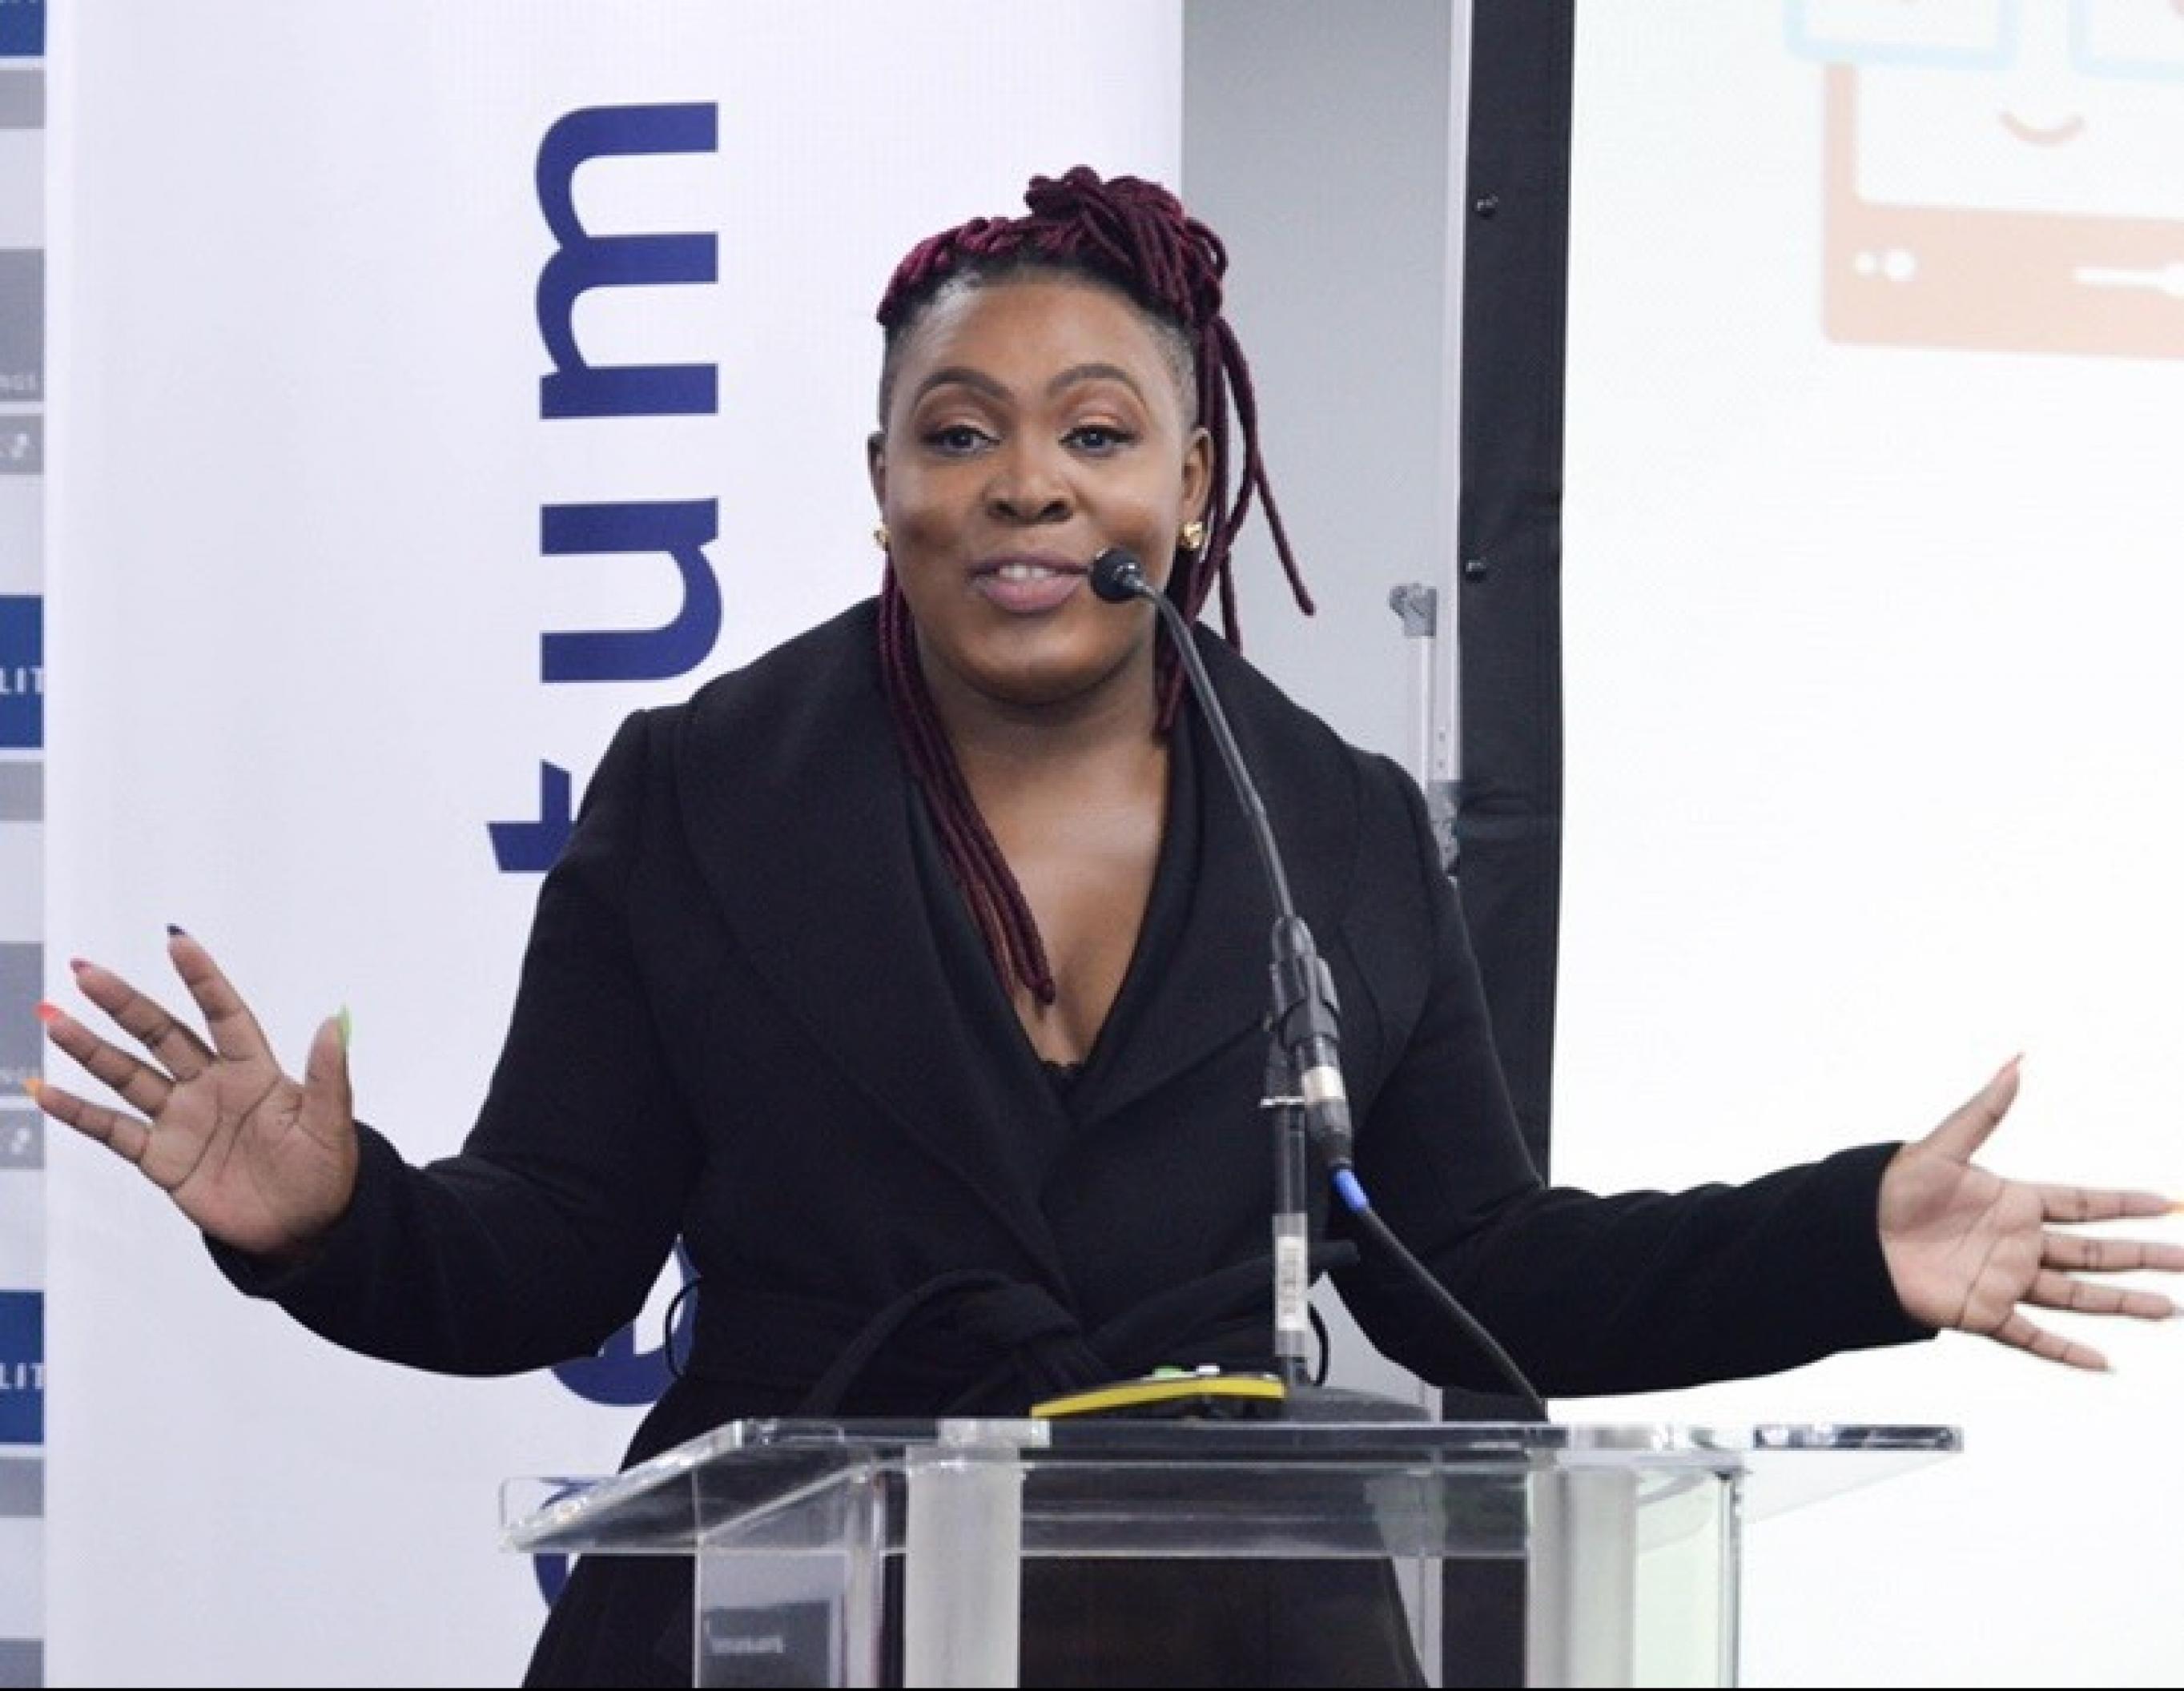 Lindiwe Matlali, Gründerin 'Africa Teen Geeks', steht bei einer Konferenz am Rednerpult